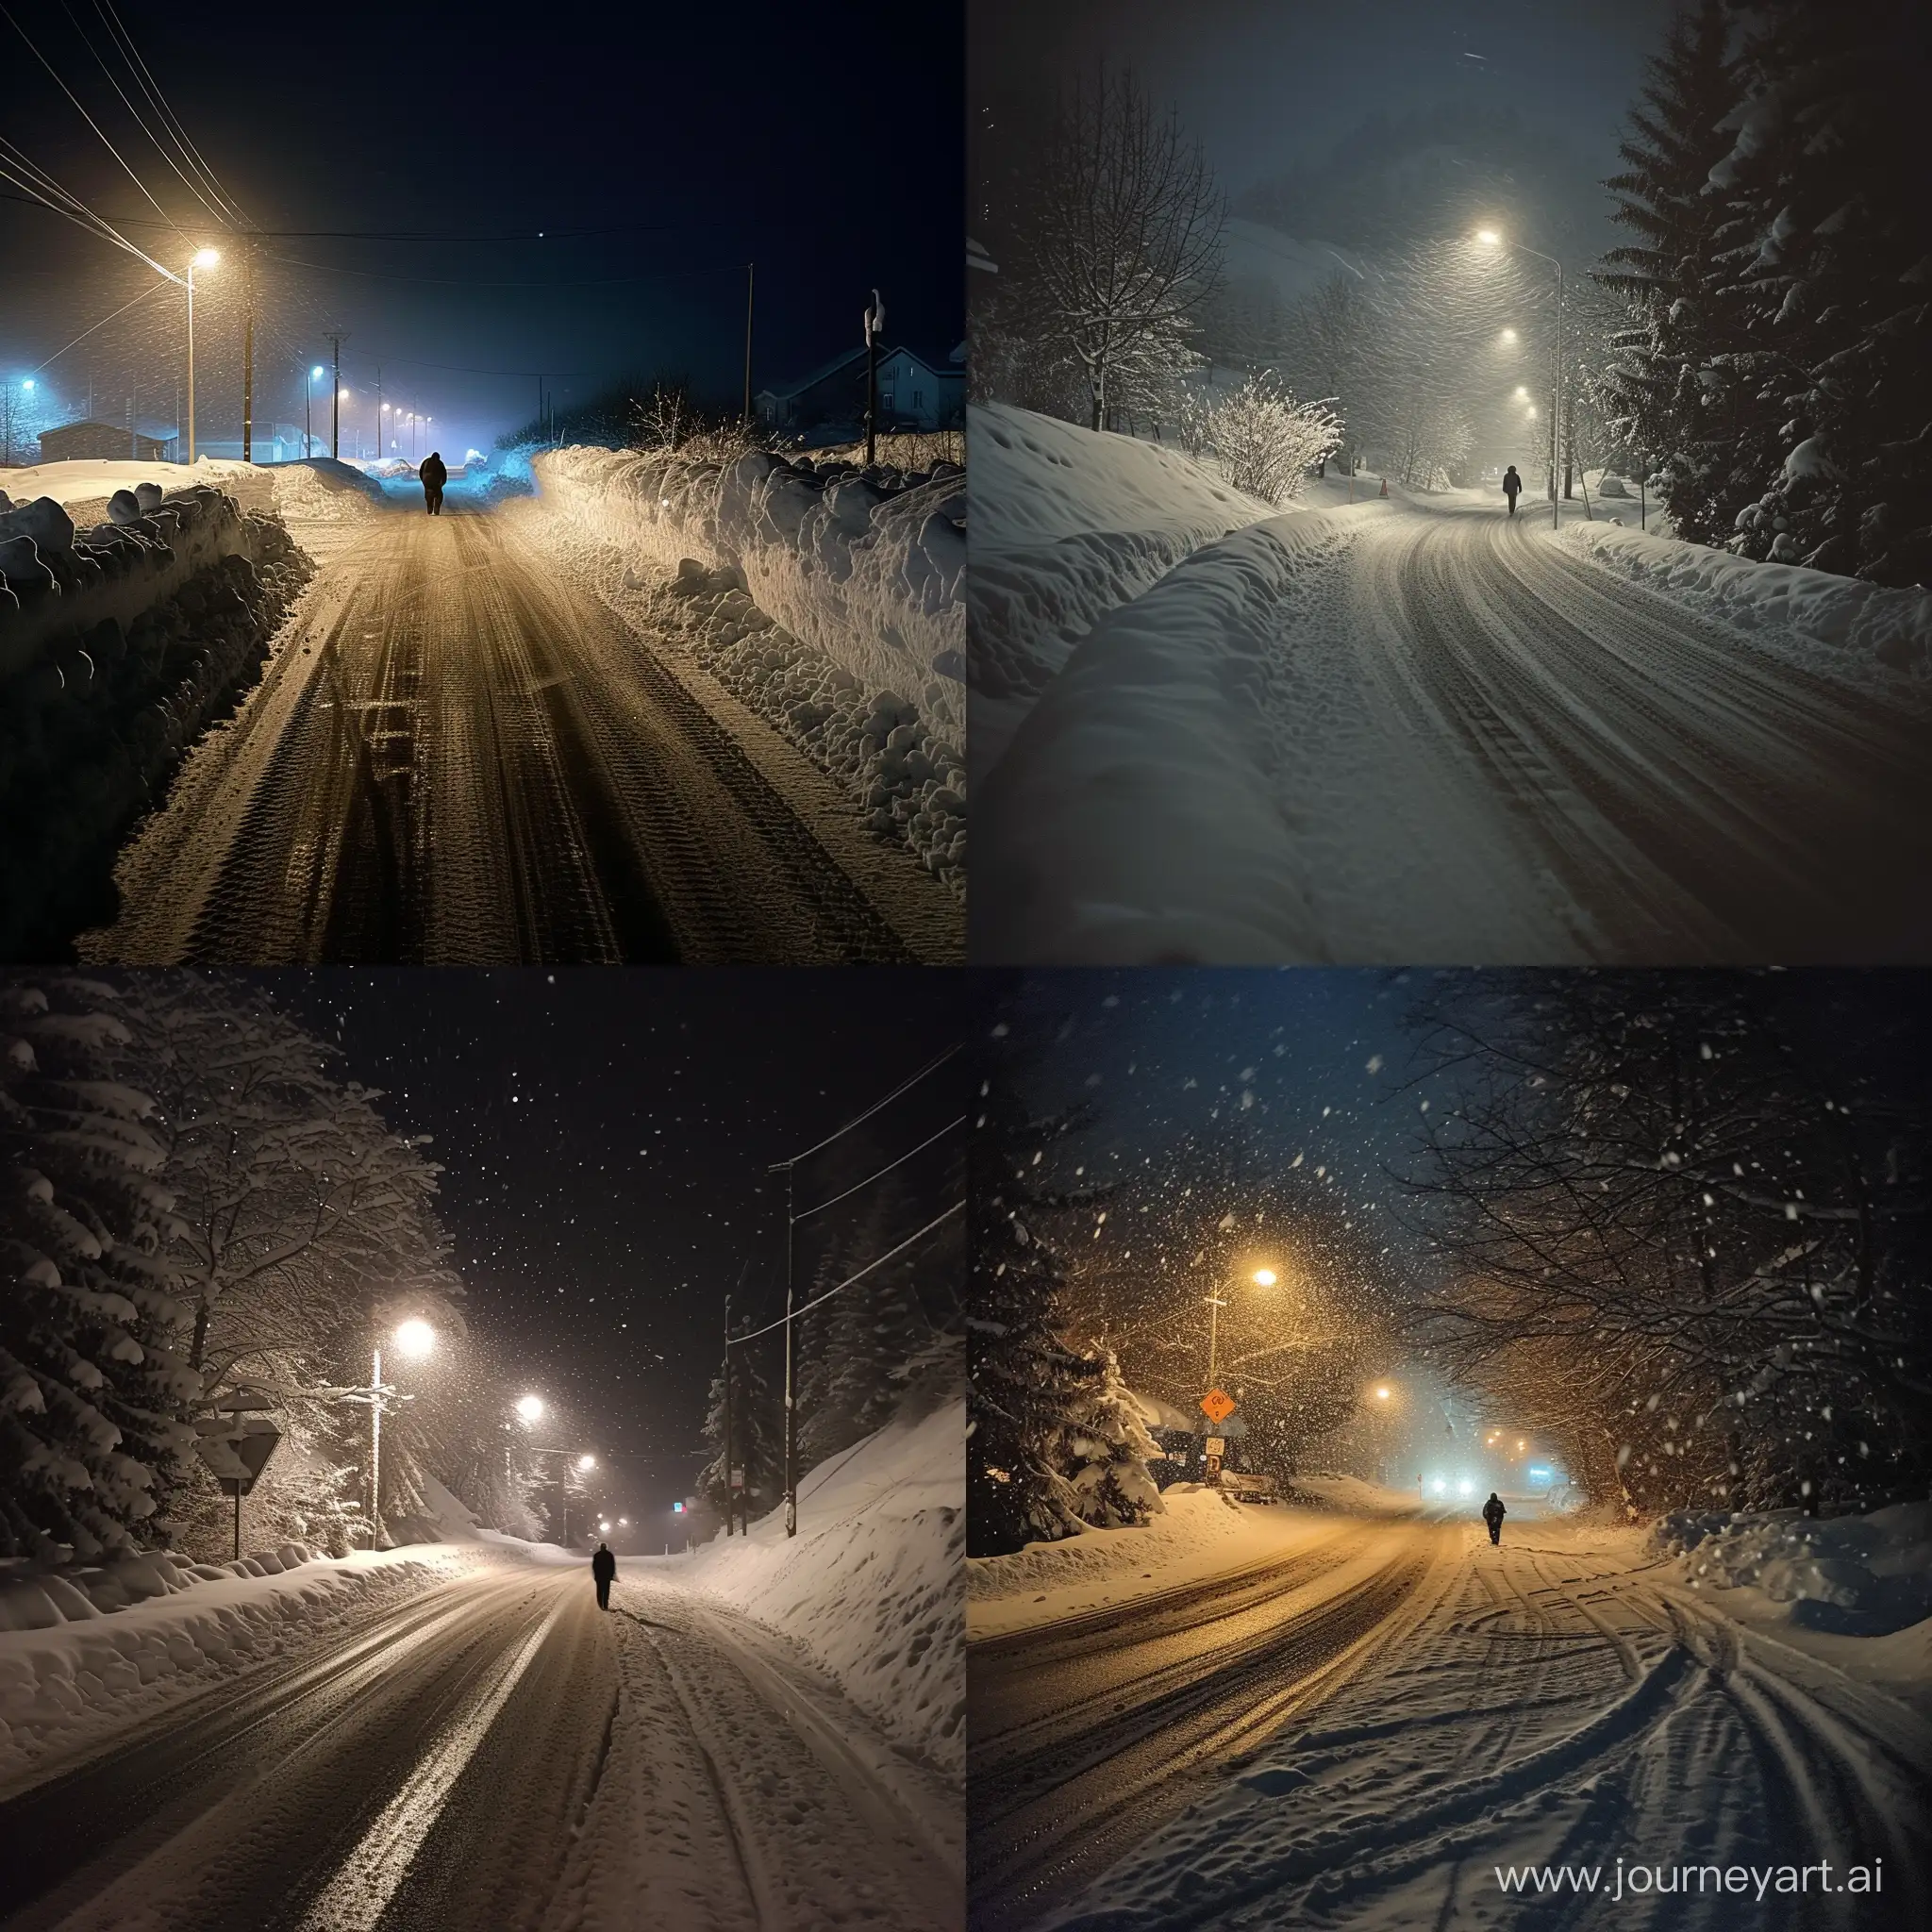 Ночь, дорога, много снега, на дороге человек.